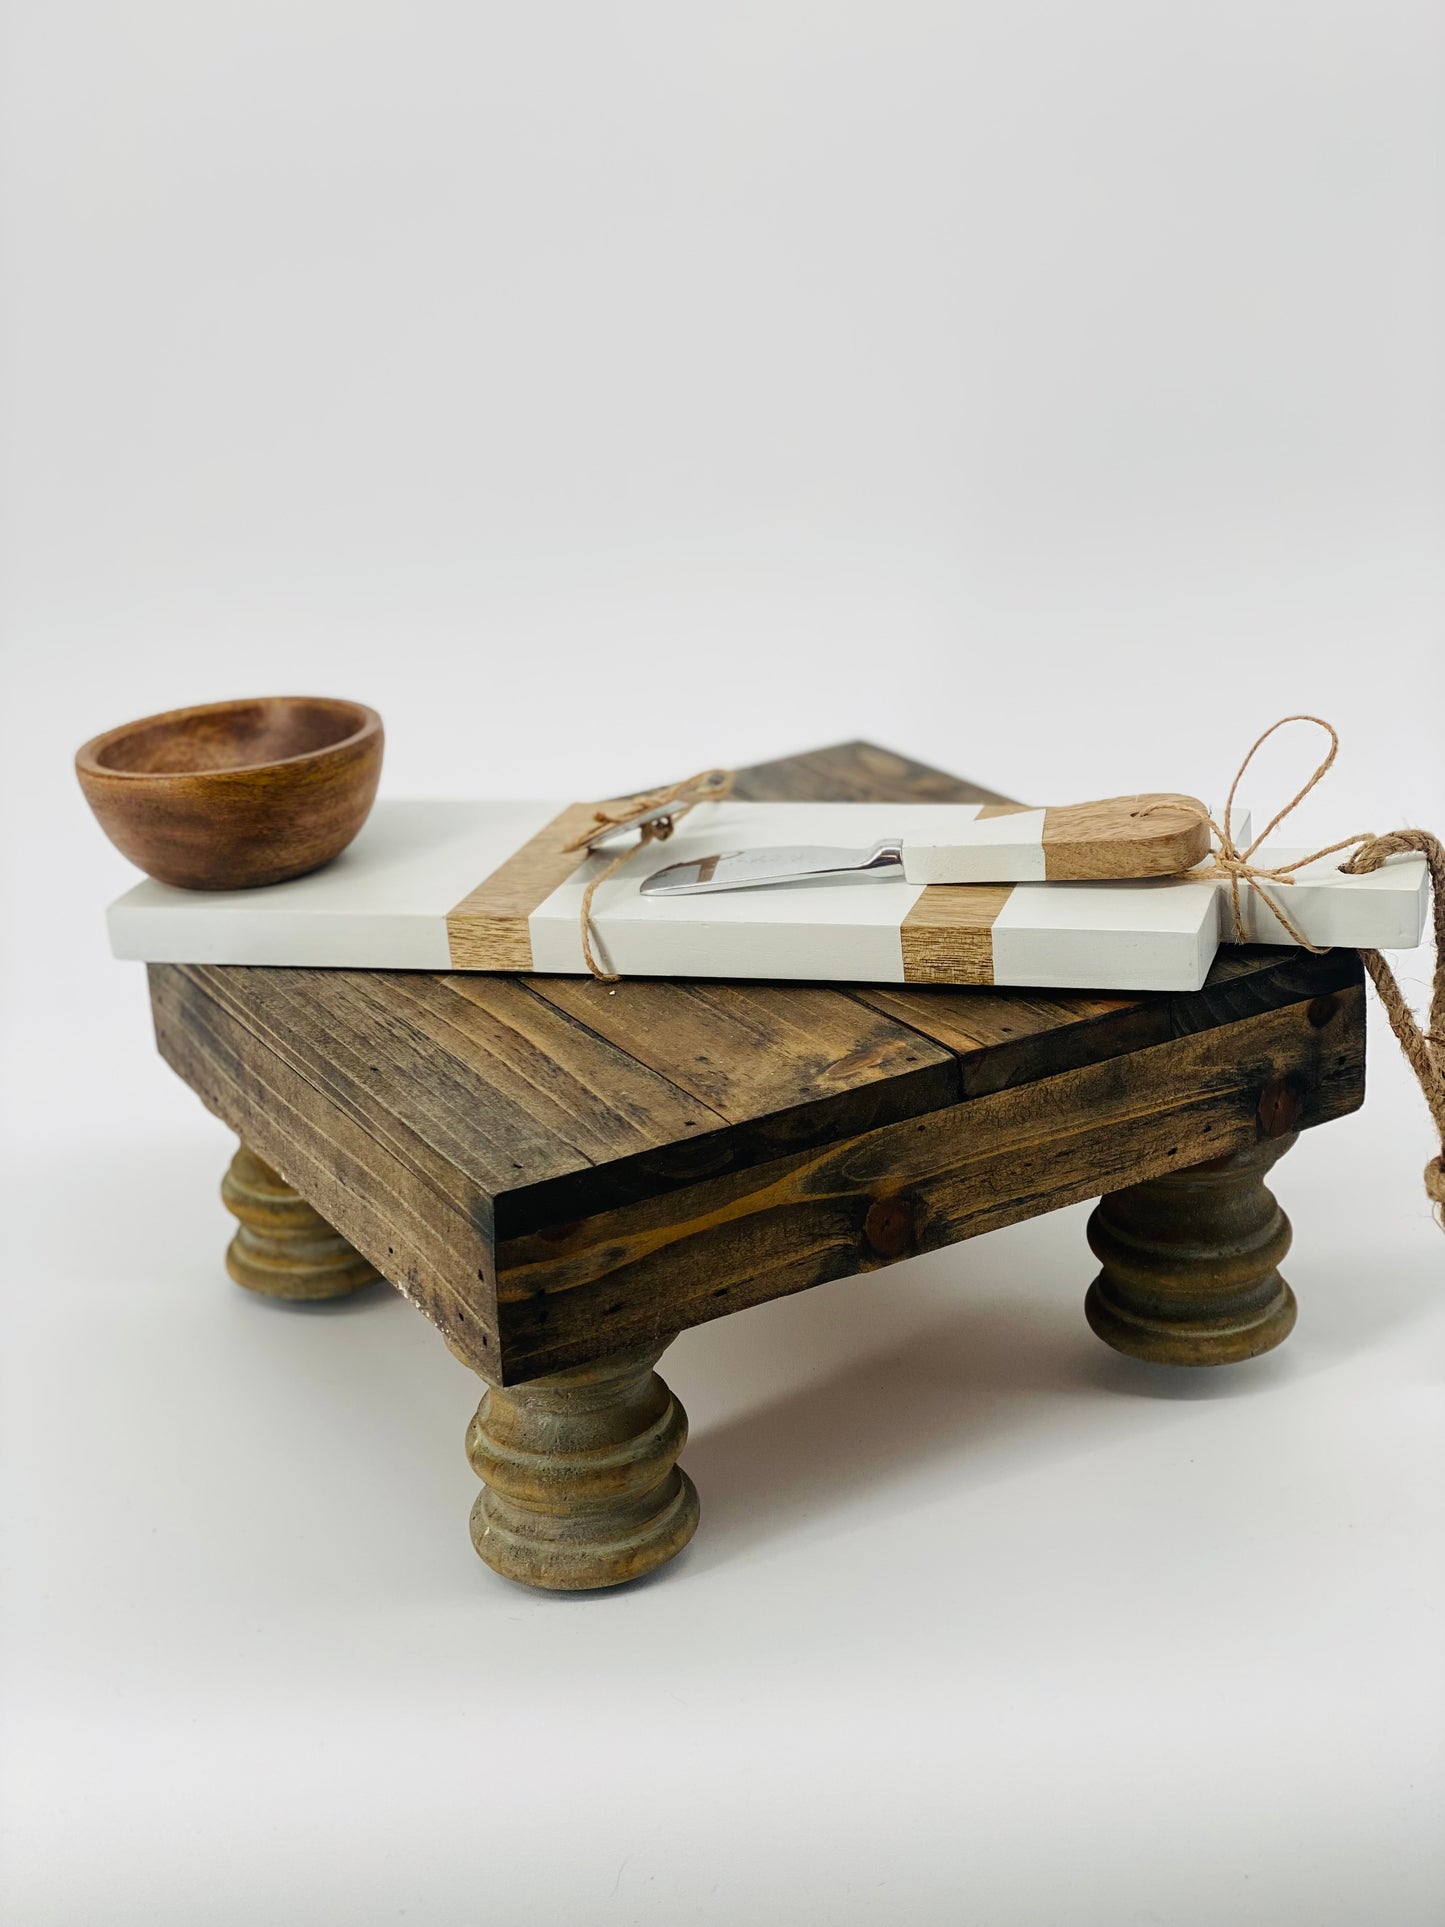 Wood White Dip & Tray Set - 40400032